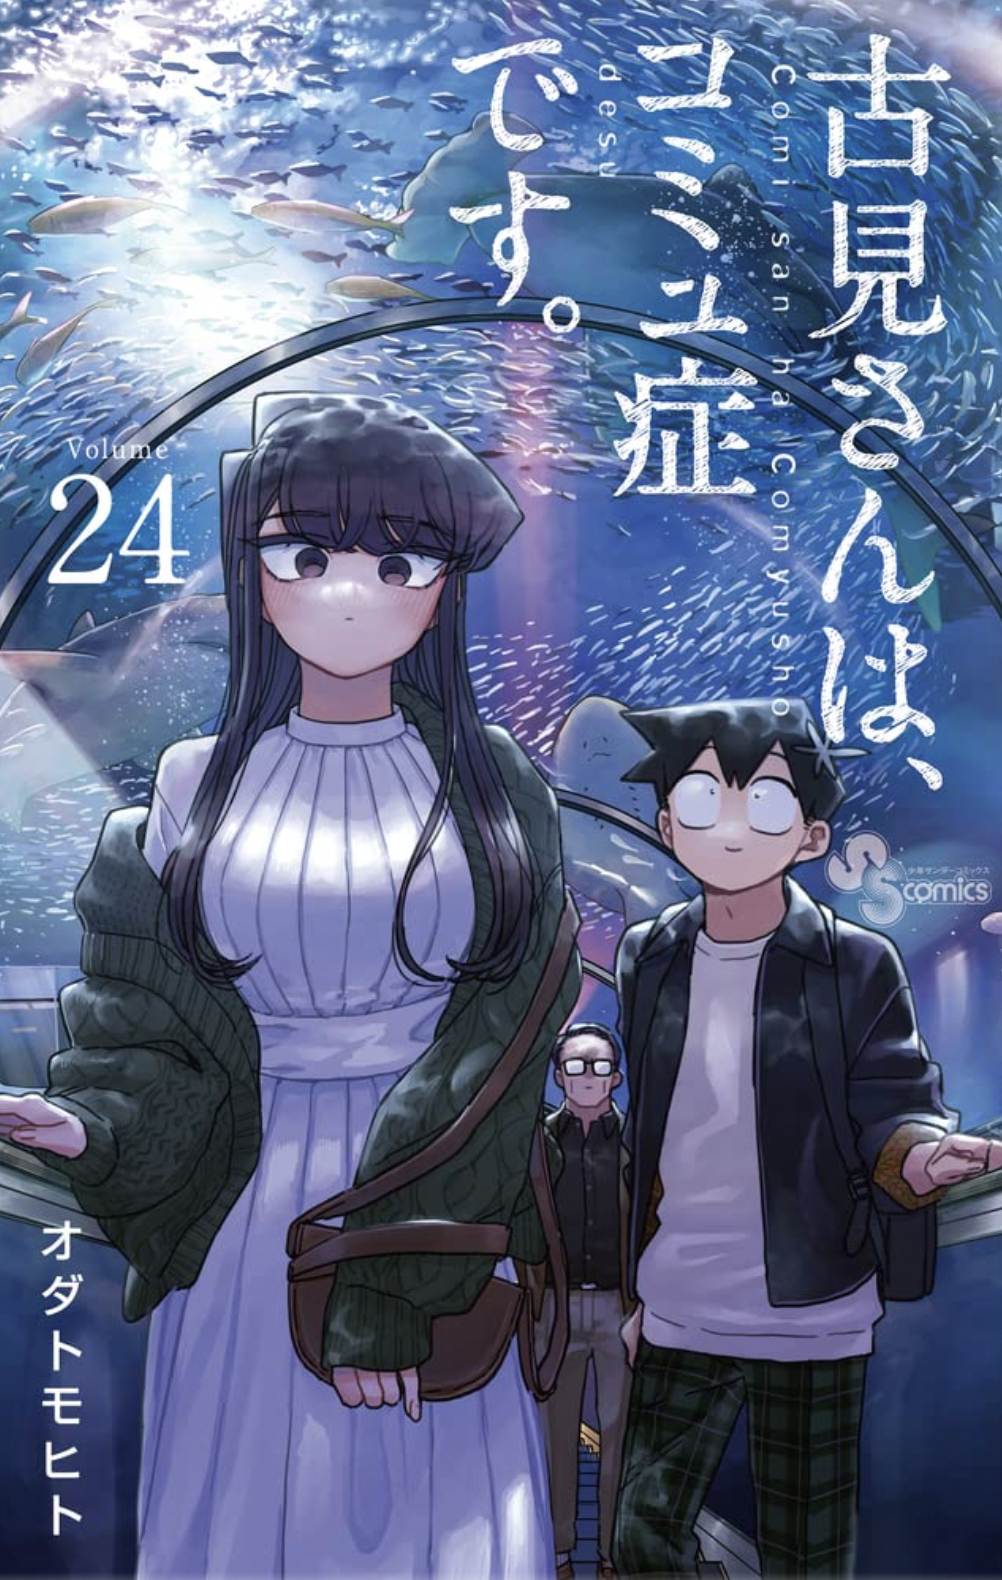 Komi-san wa, Komyushou desu. Capítulo 165 - Manga Online